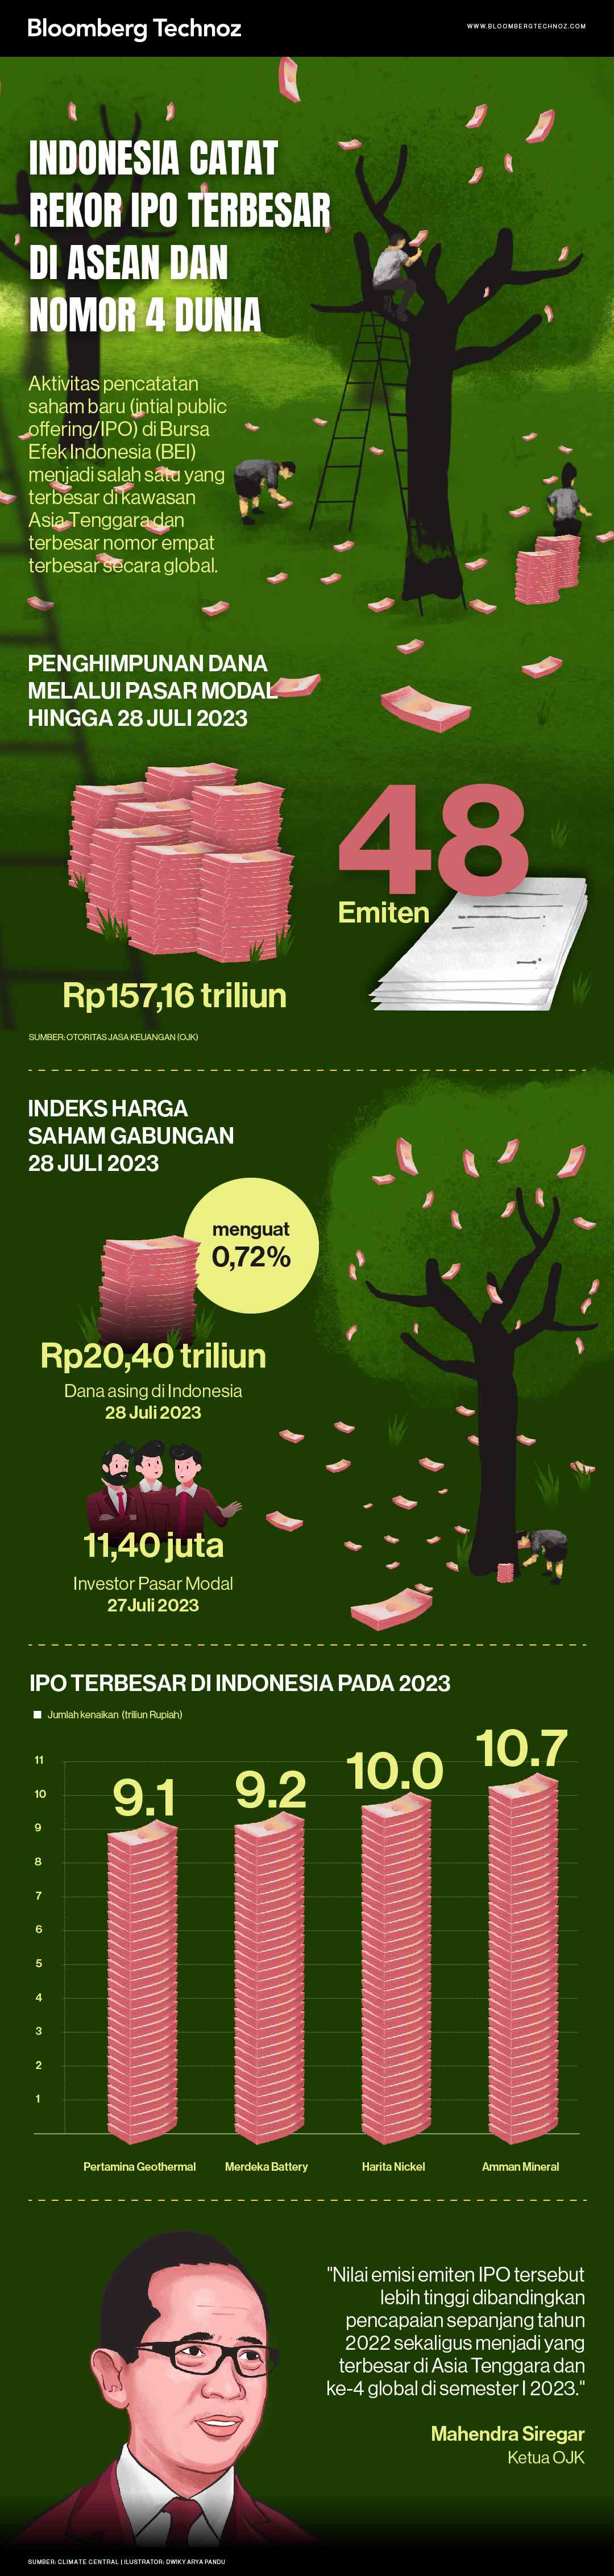 Indonesia Catat Rekor IPO Terbesar di ASEAN & Nomor 4 Dunia (Infografis/Bloomberg Technoz)